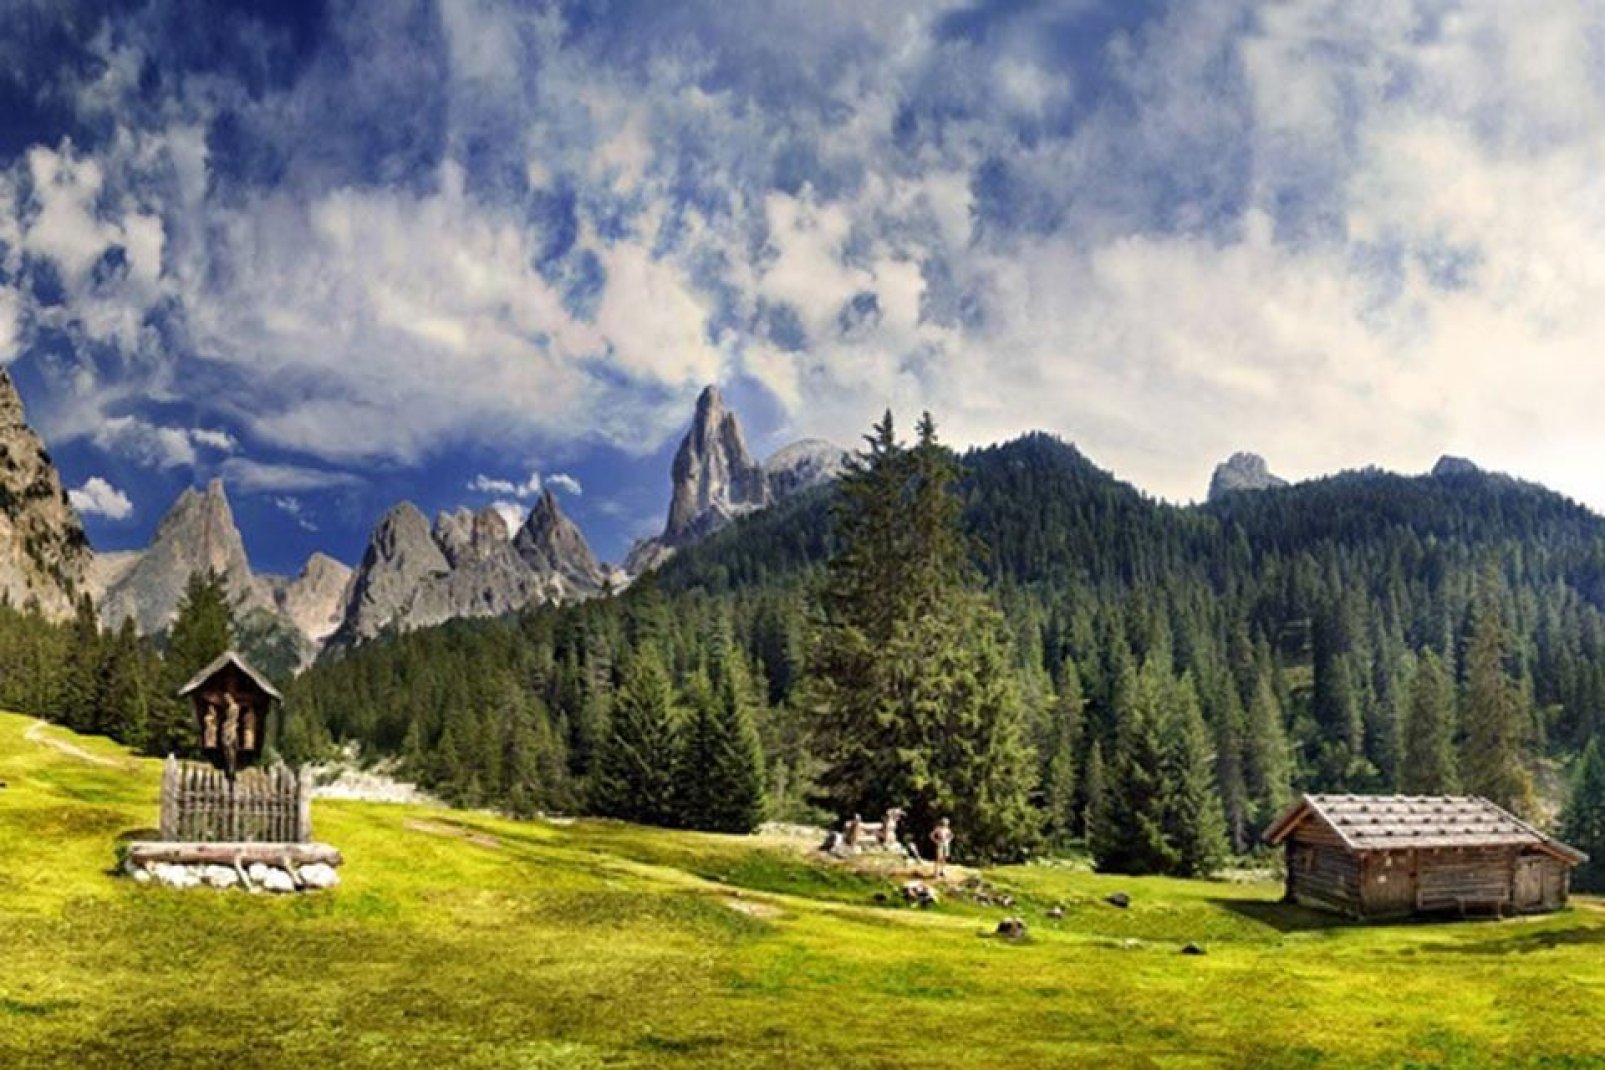 Las Dolomitas, una cadena montañosa situada entre Belluno y Pordenone, fueron declaradas Patrimonio de la Humanidad por la Unesco.